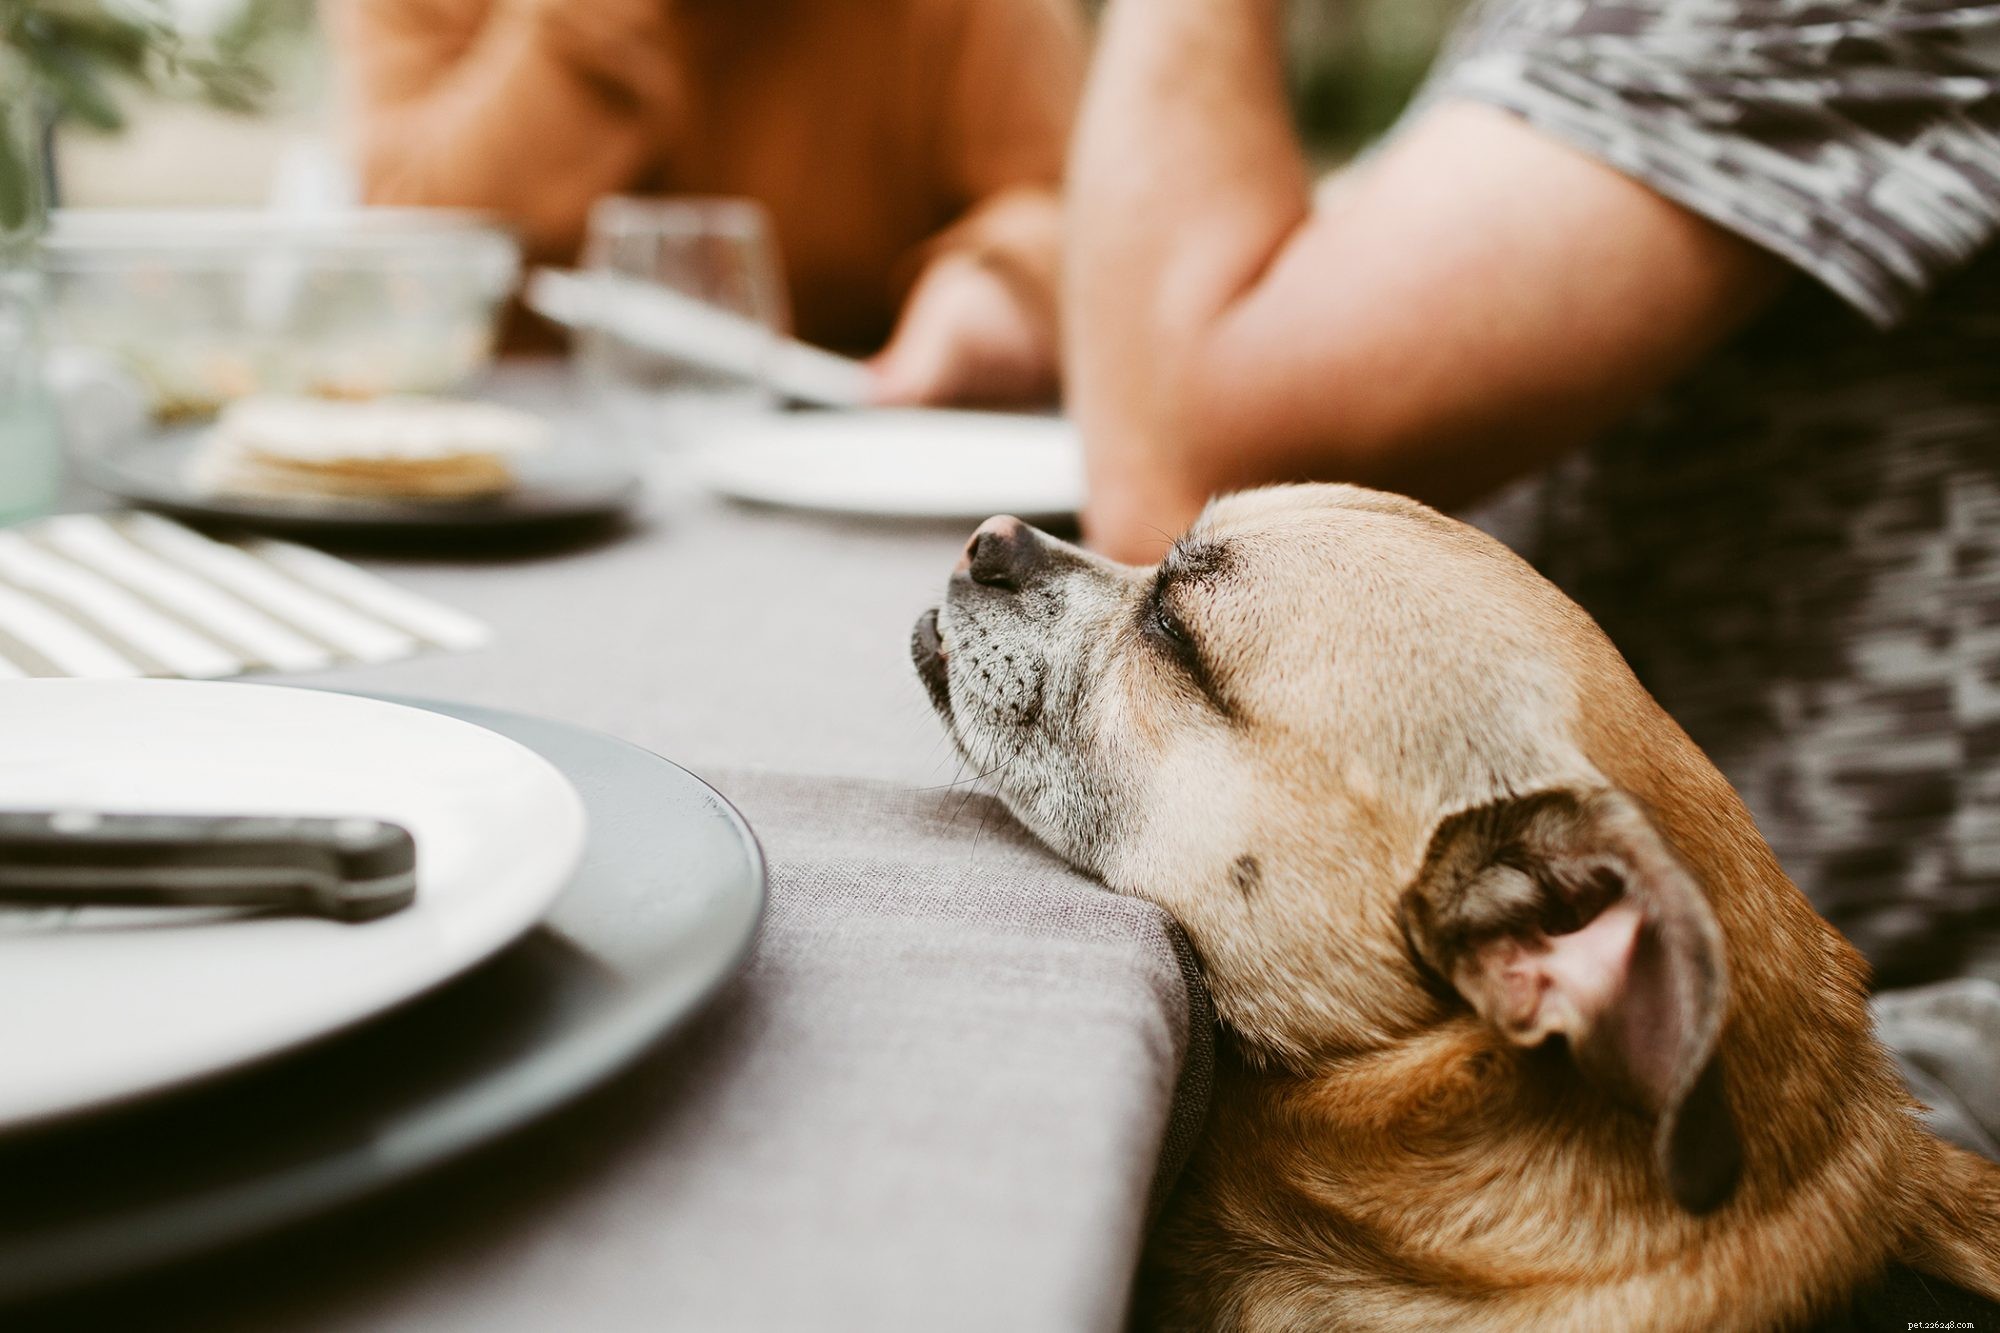 Je šunka bezpečným krmivem pro psy?